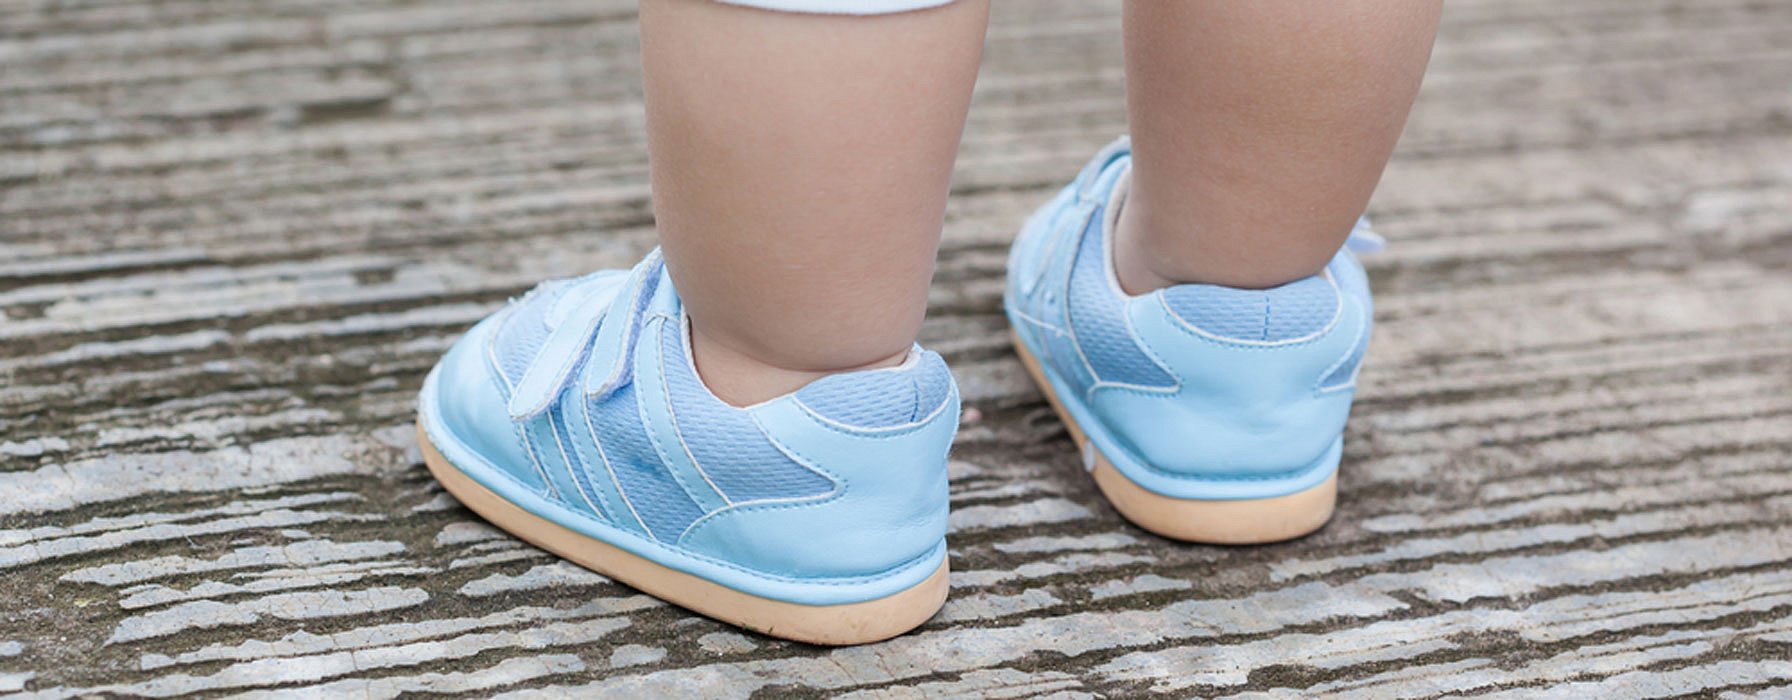 Zapatos bebés niños pequeños